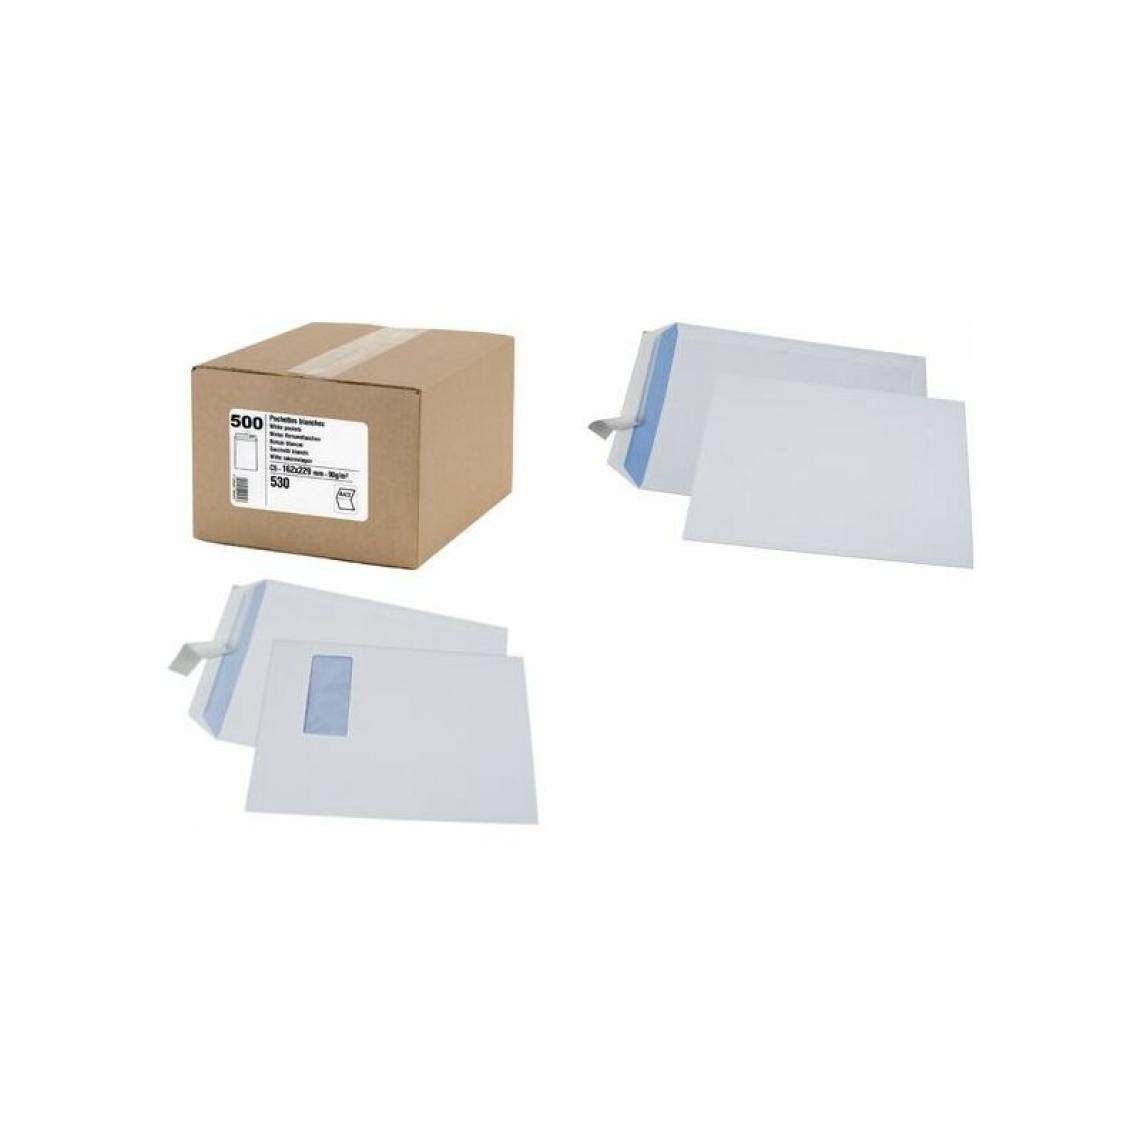 Gpv Erapure - GPV Pochettes d'expédition, 24, 260 x 330 mm, blanc, 90g/m2 () - Kits de déménagement